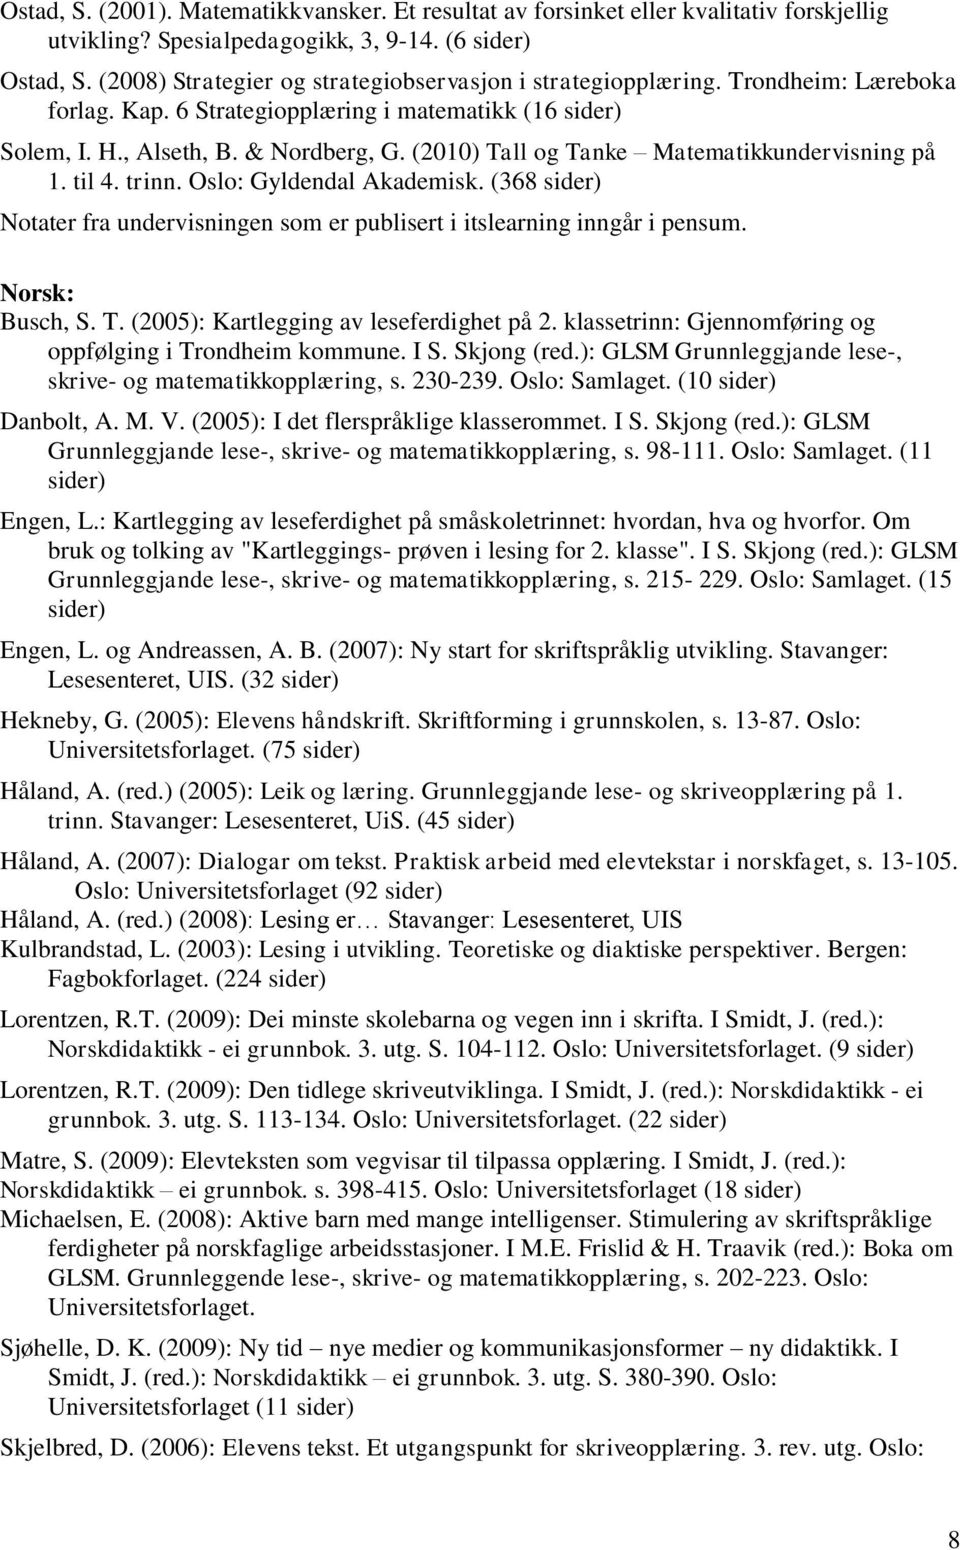 (2010) Tall og Tanke Matematikkundervisning på 1. til 4. trinn. Oslo: Gyldendal Akademisk. (368 sider) Notater fra undervisningen som er publisert i itslearning inngår i pensum. Norsk: Busch, S. T. (2005): Kartlegging av leseferdighet på 2.